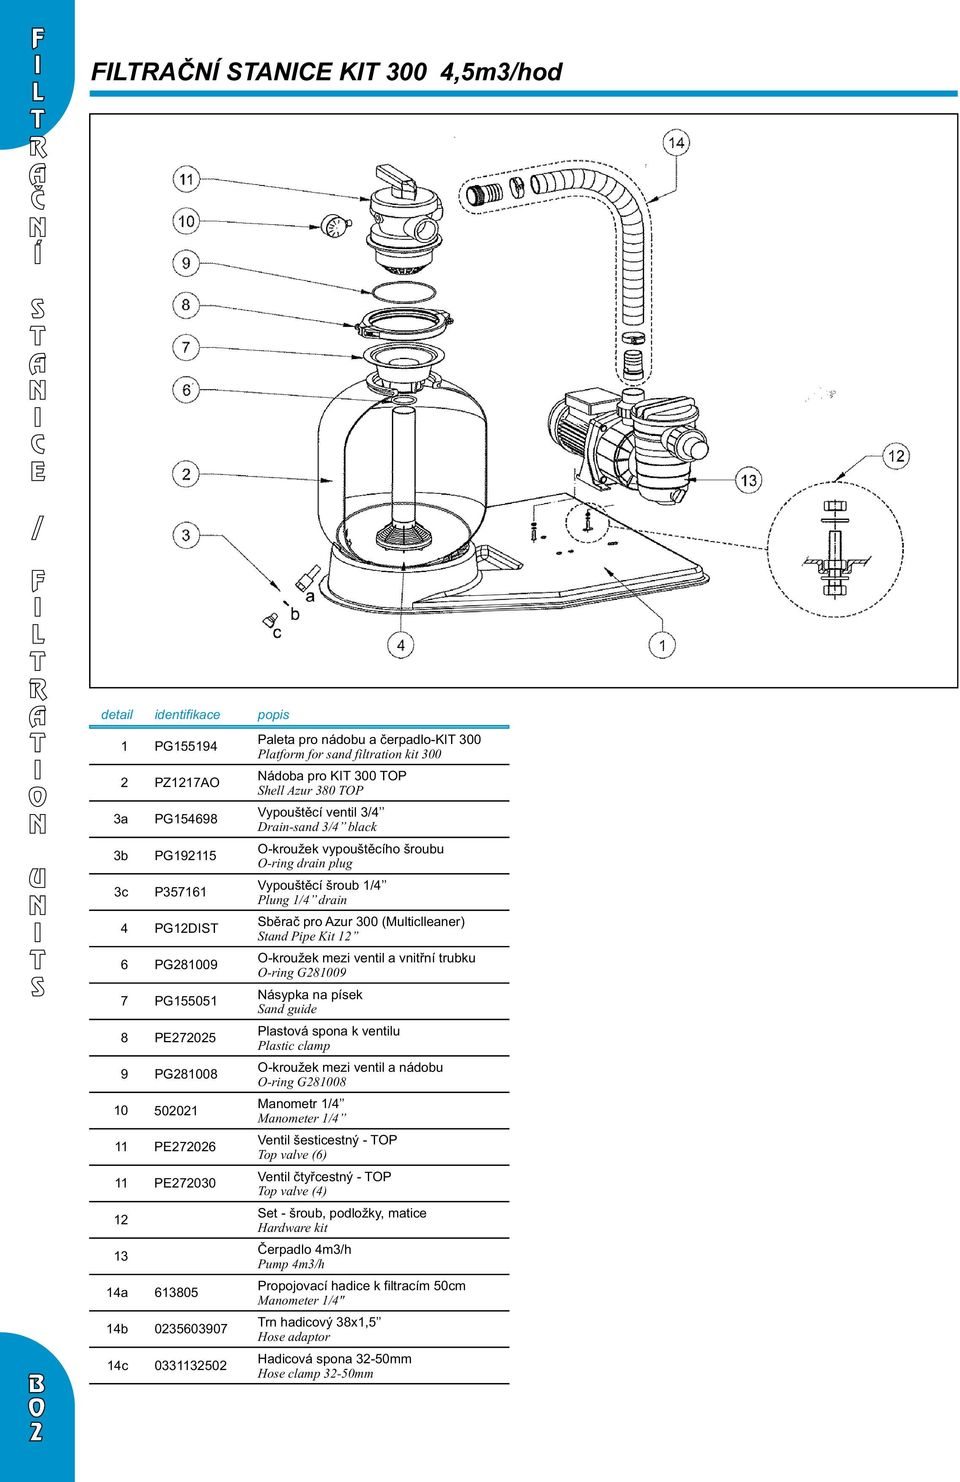 guide P0 Plastová spona k ventilu Plastic clamp PG00 -kroužek mezi ventil a nádobu -ring G00 0 00 Manometr Manometer P0 Ventil šesticestný - P op valve () P00 Ventil čtyřcestný - P op